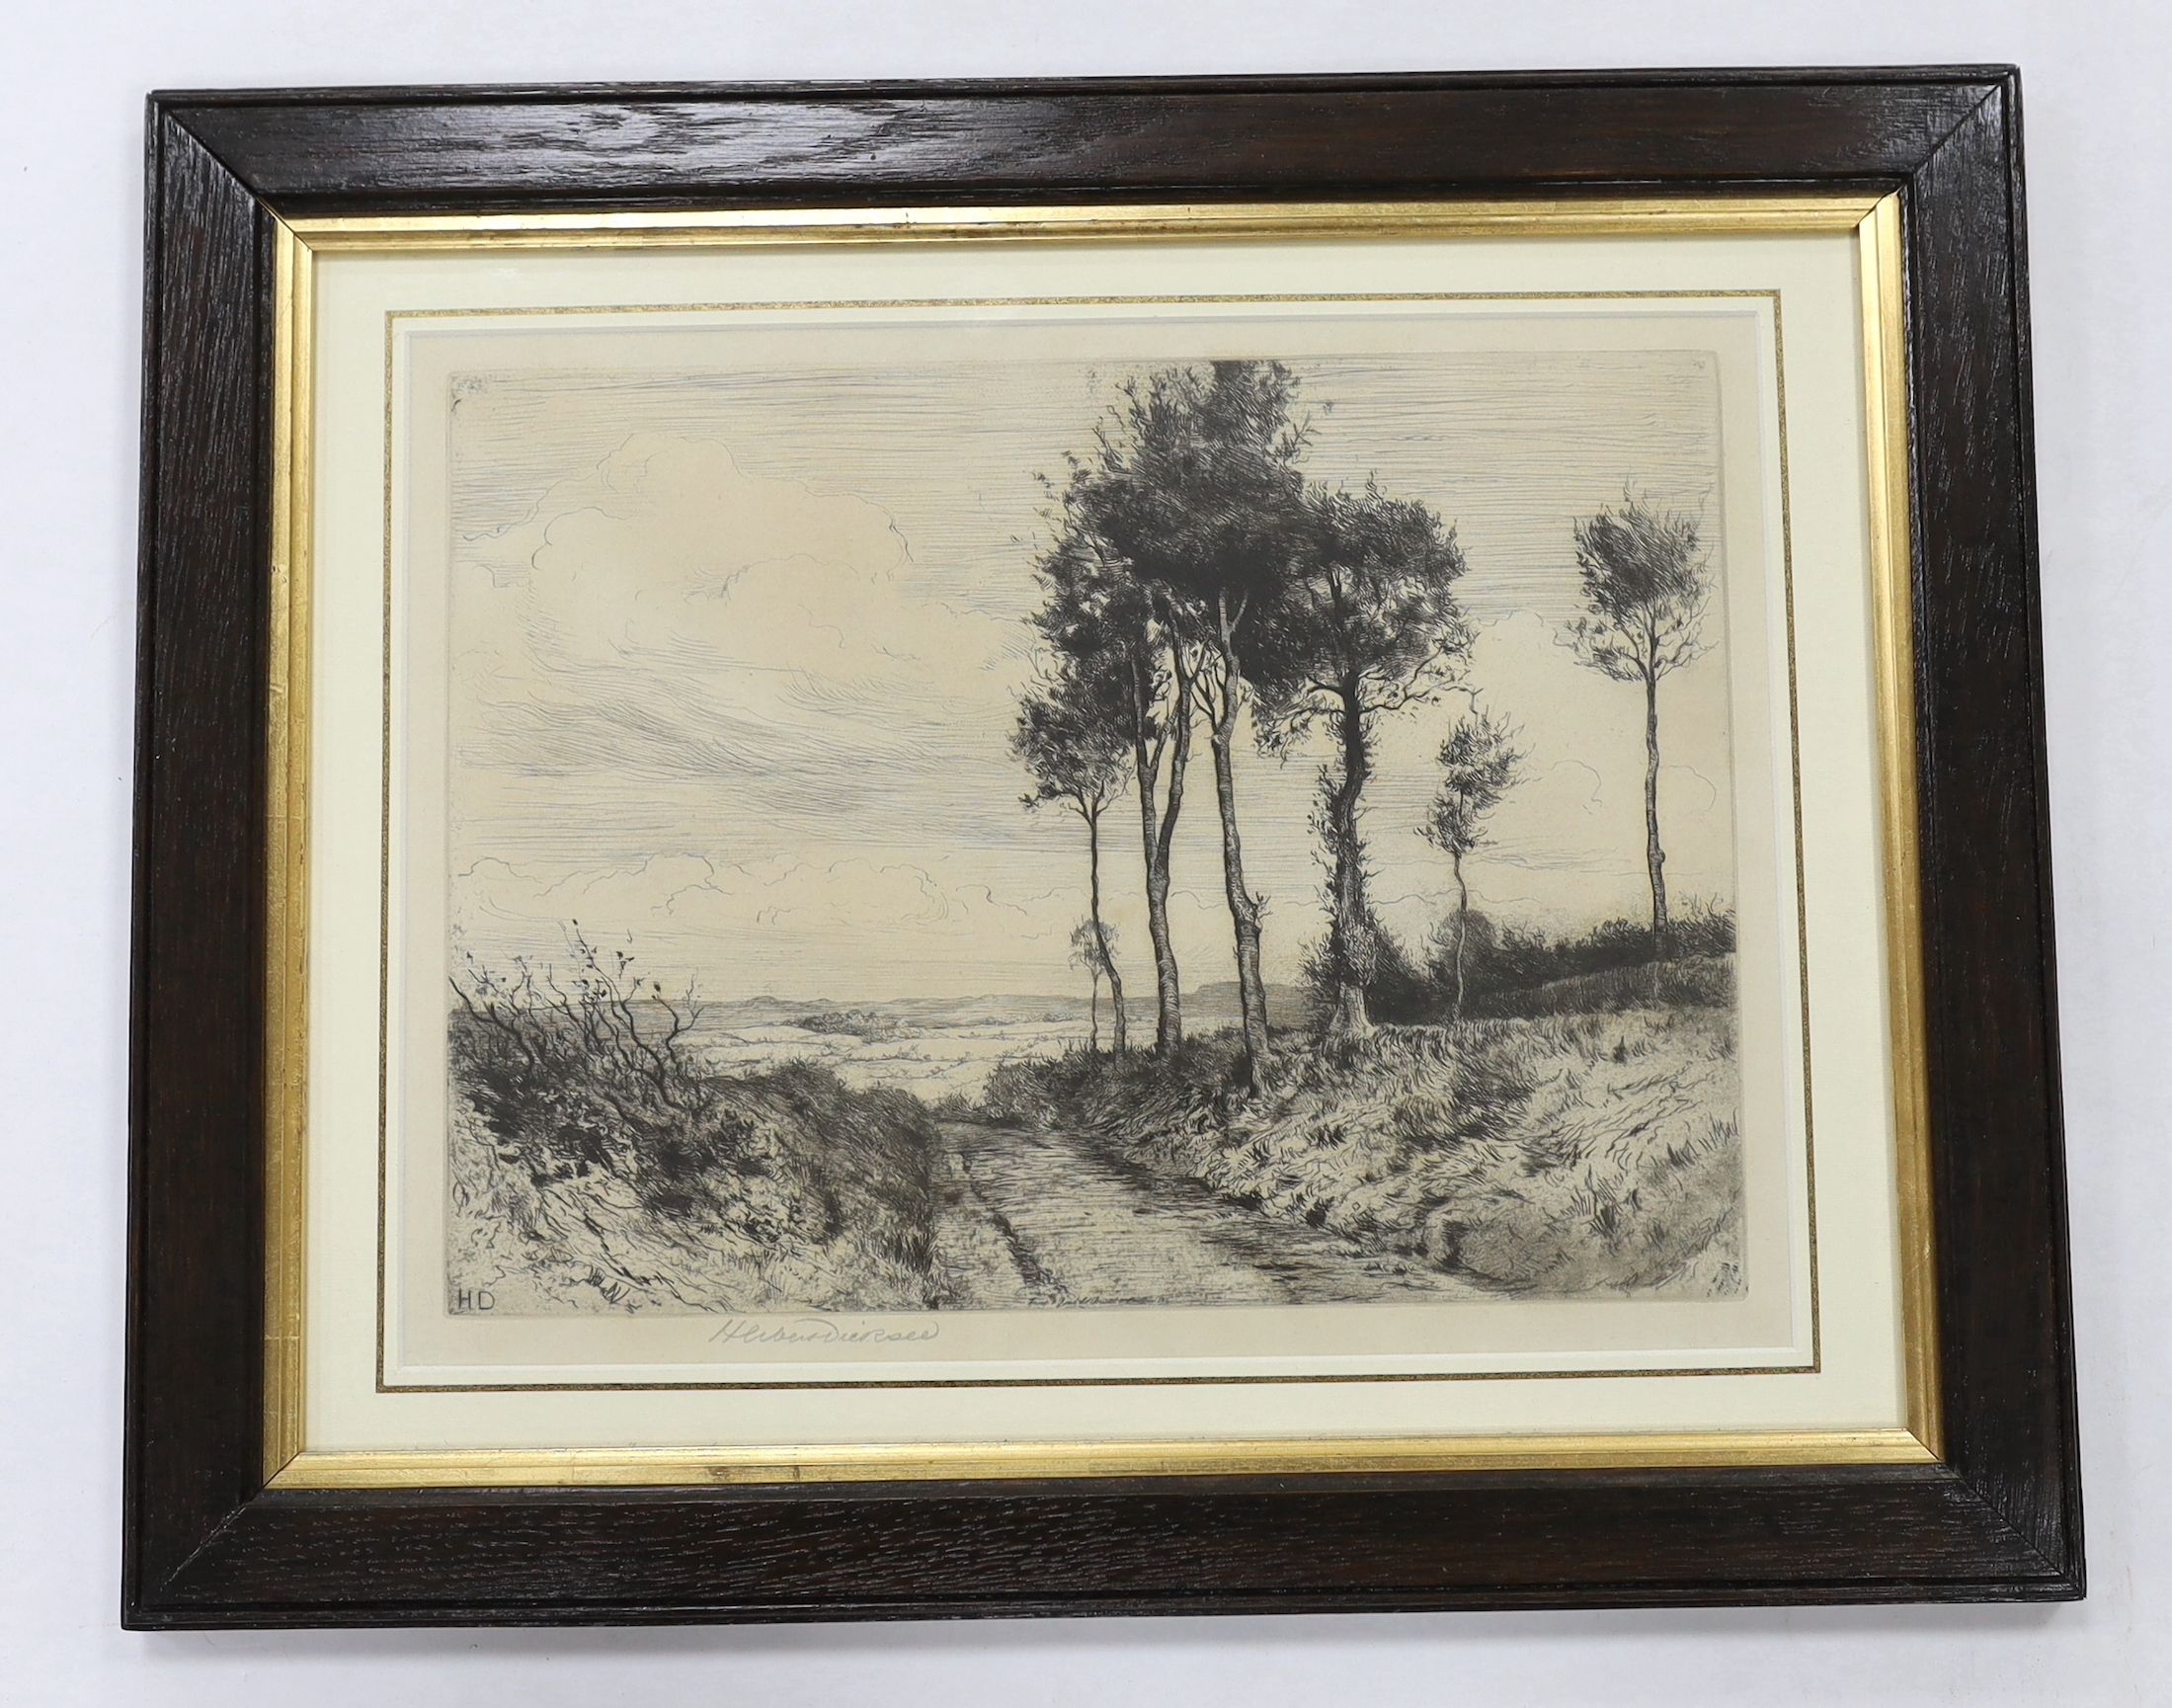 Herbert Dicksee (1862-1942), etching, 'Shaldon Lane', signed in pencil, 28 x 37cm